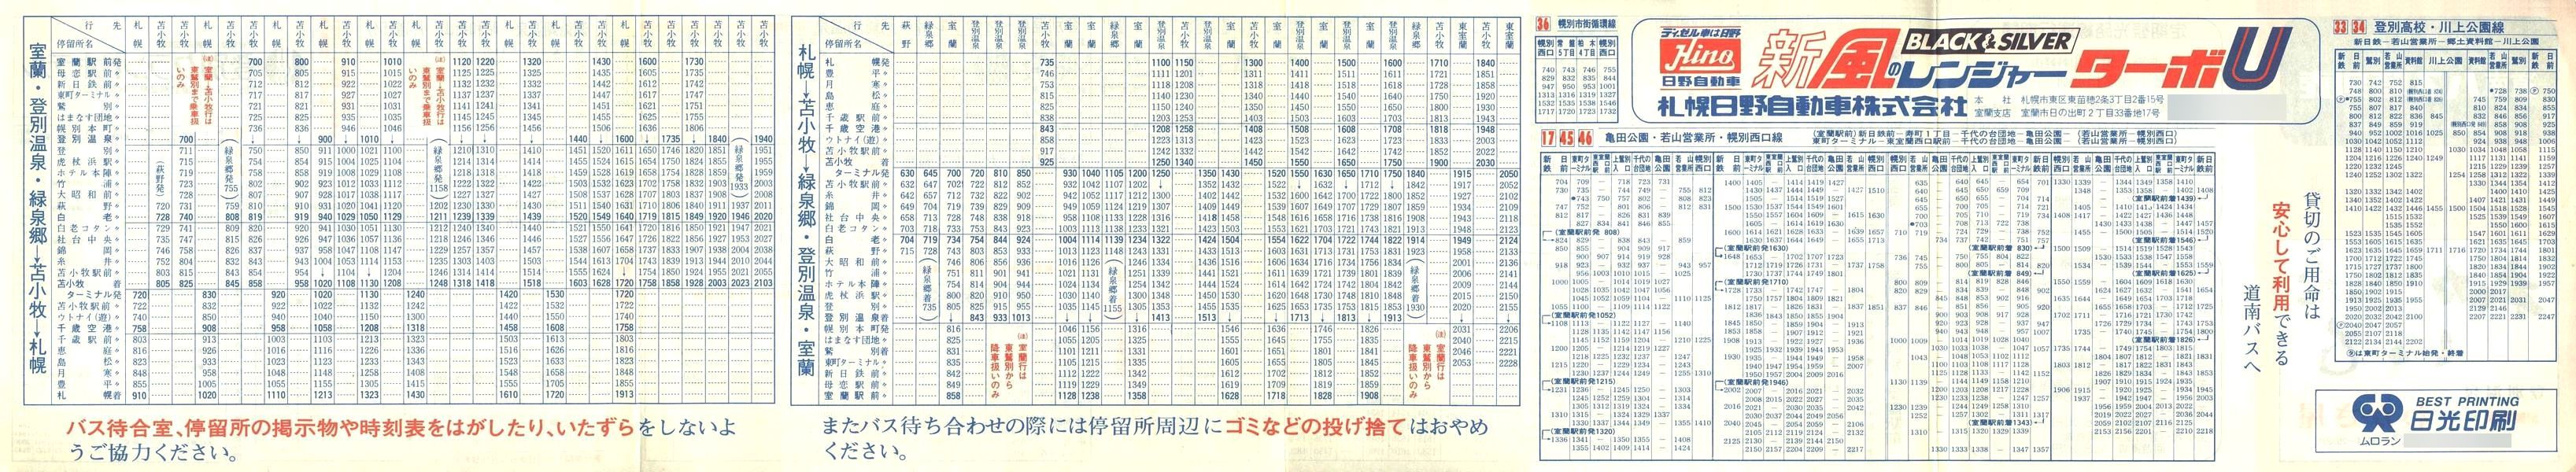 1983-04-03改正_道南バス_登別管内時刻表裏面